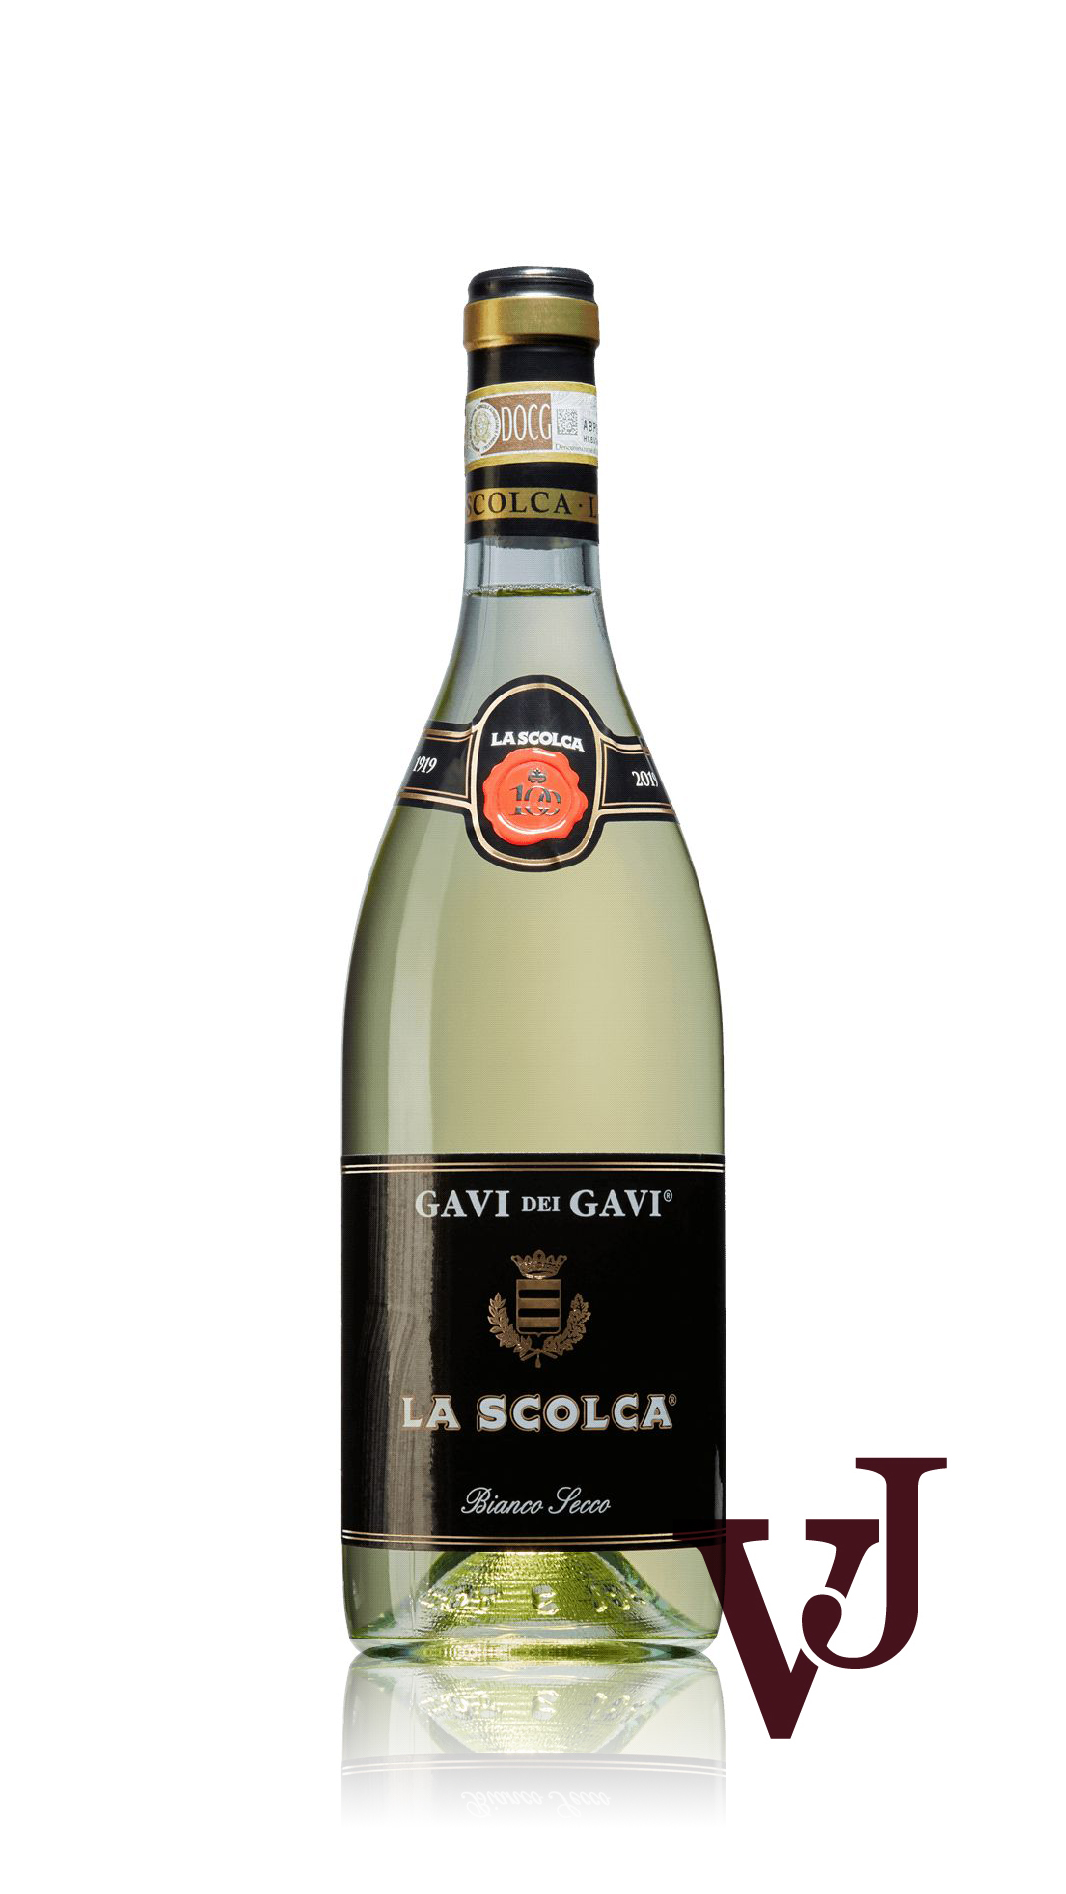 Vitt Vin - La Scolca Etichetta Nera Gavi artikel nummer 8375501 från producenten Azienda Agricola La Scolca Società Semplice från området Italien